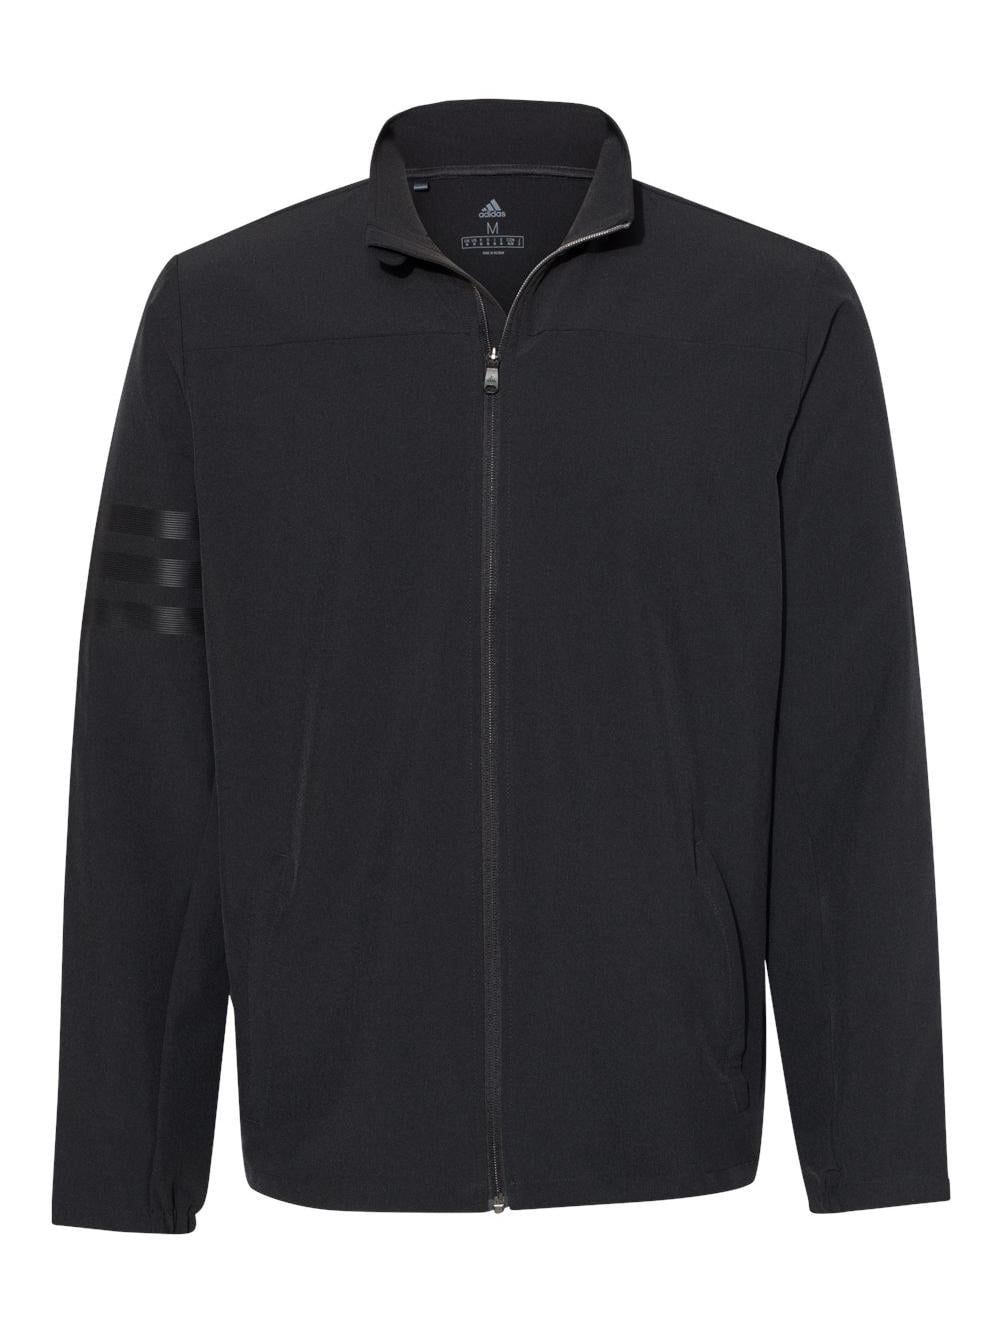 Ciudad Ese Gestionar Adidas - 3-Stripes Full-Zip Jacket - A267 - Black/ Black - Size: M -  Walmart.com